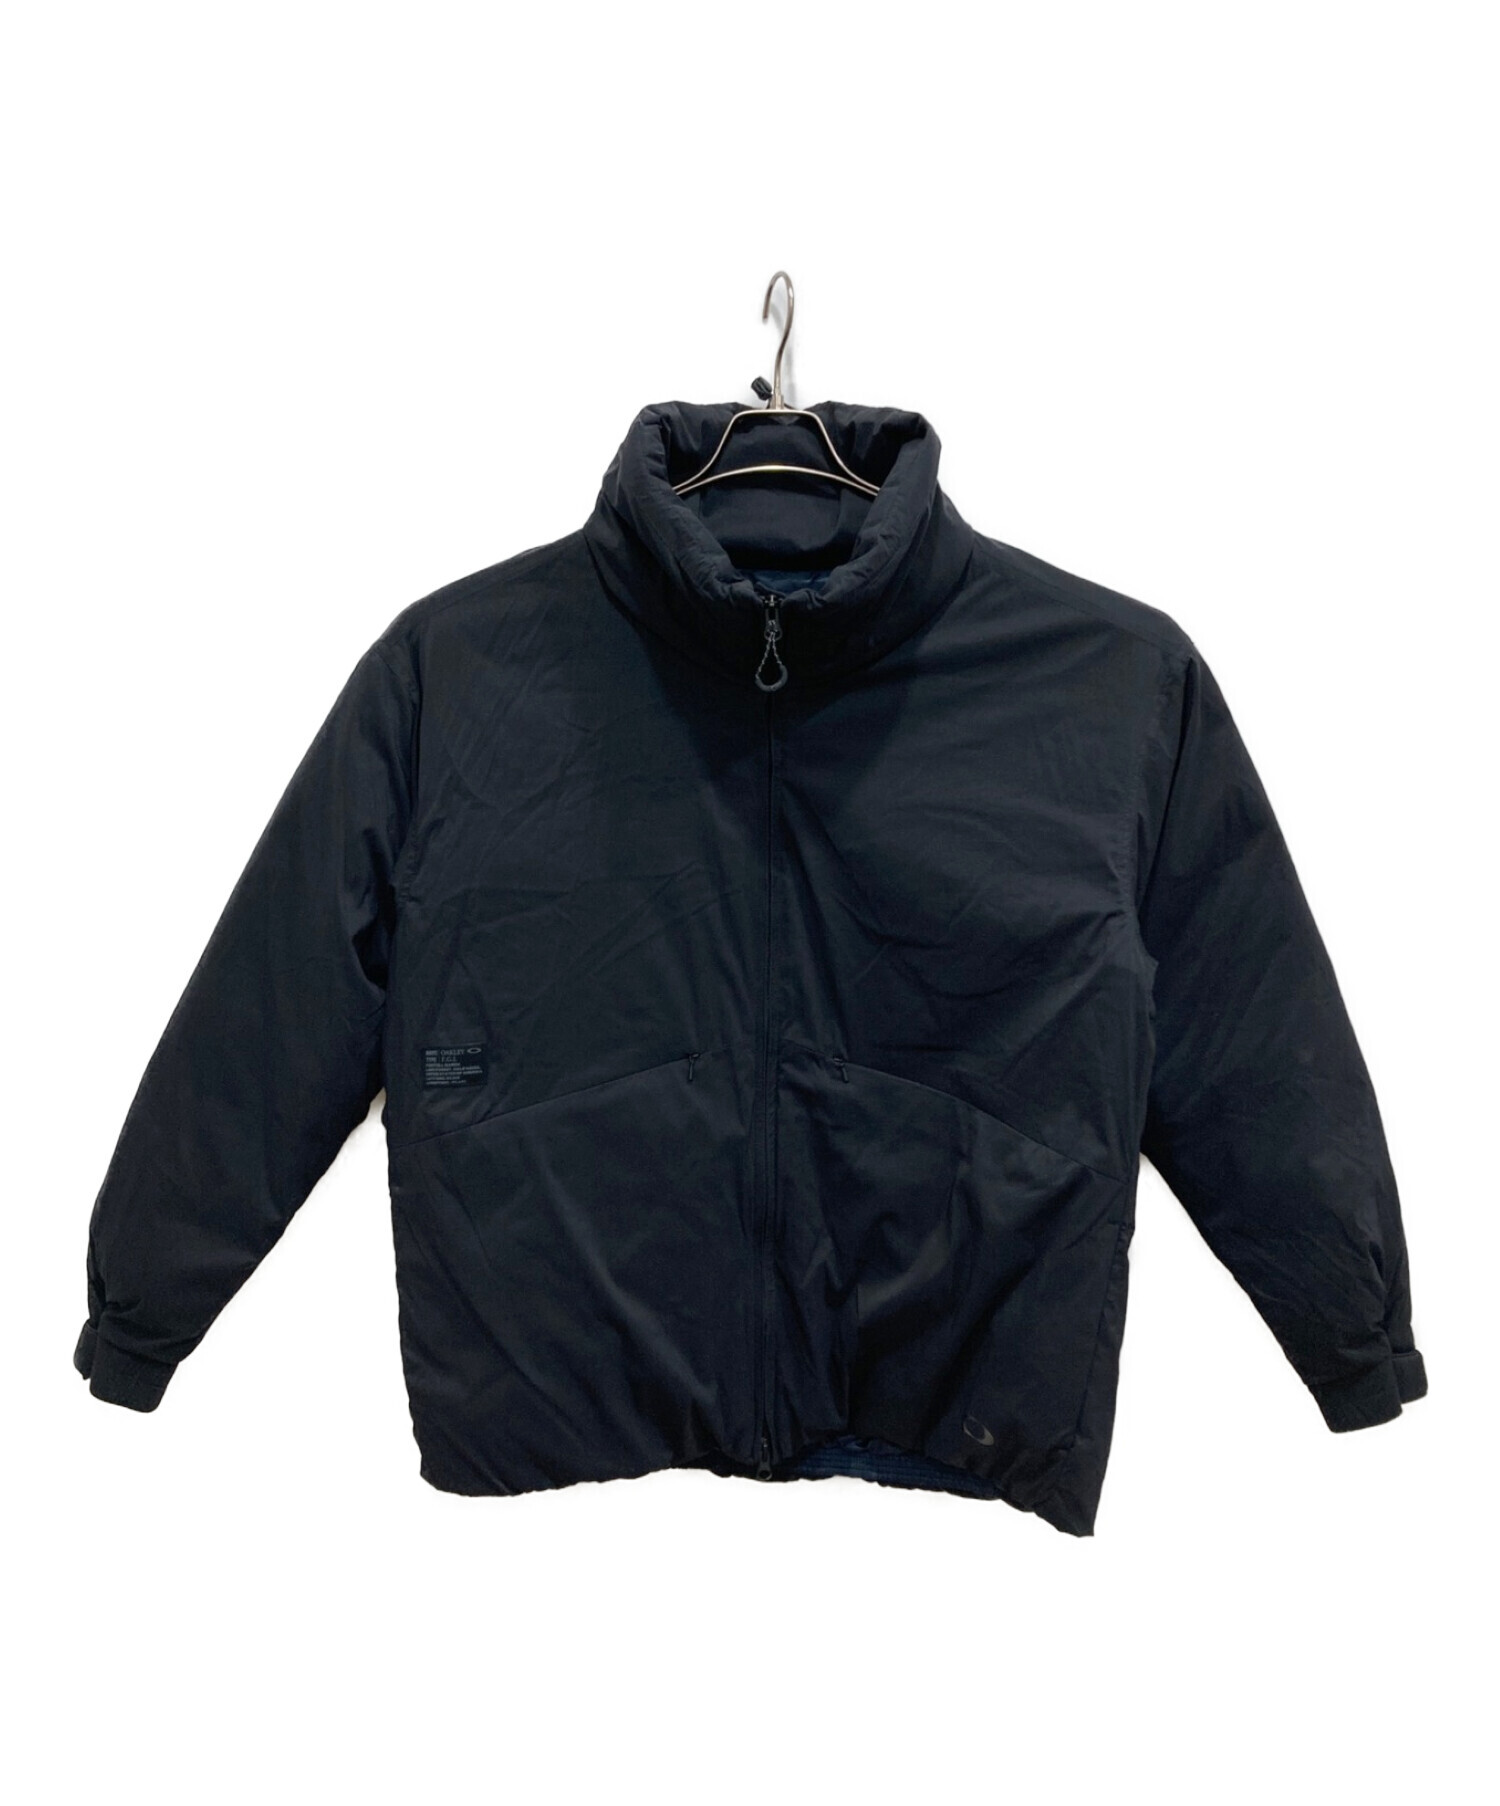 OAKLEY (オークリー) パファーインスレイションジャケット ブラック サイズ:L